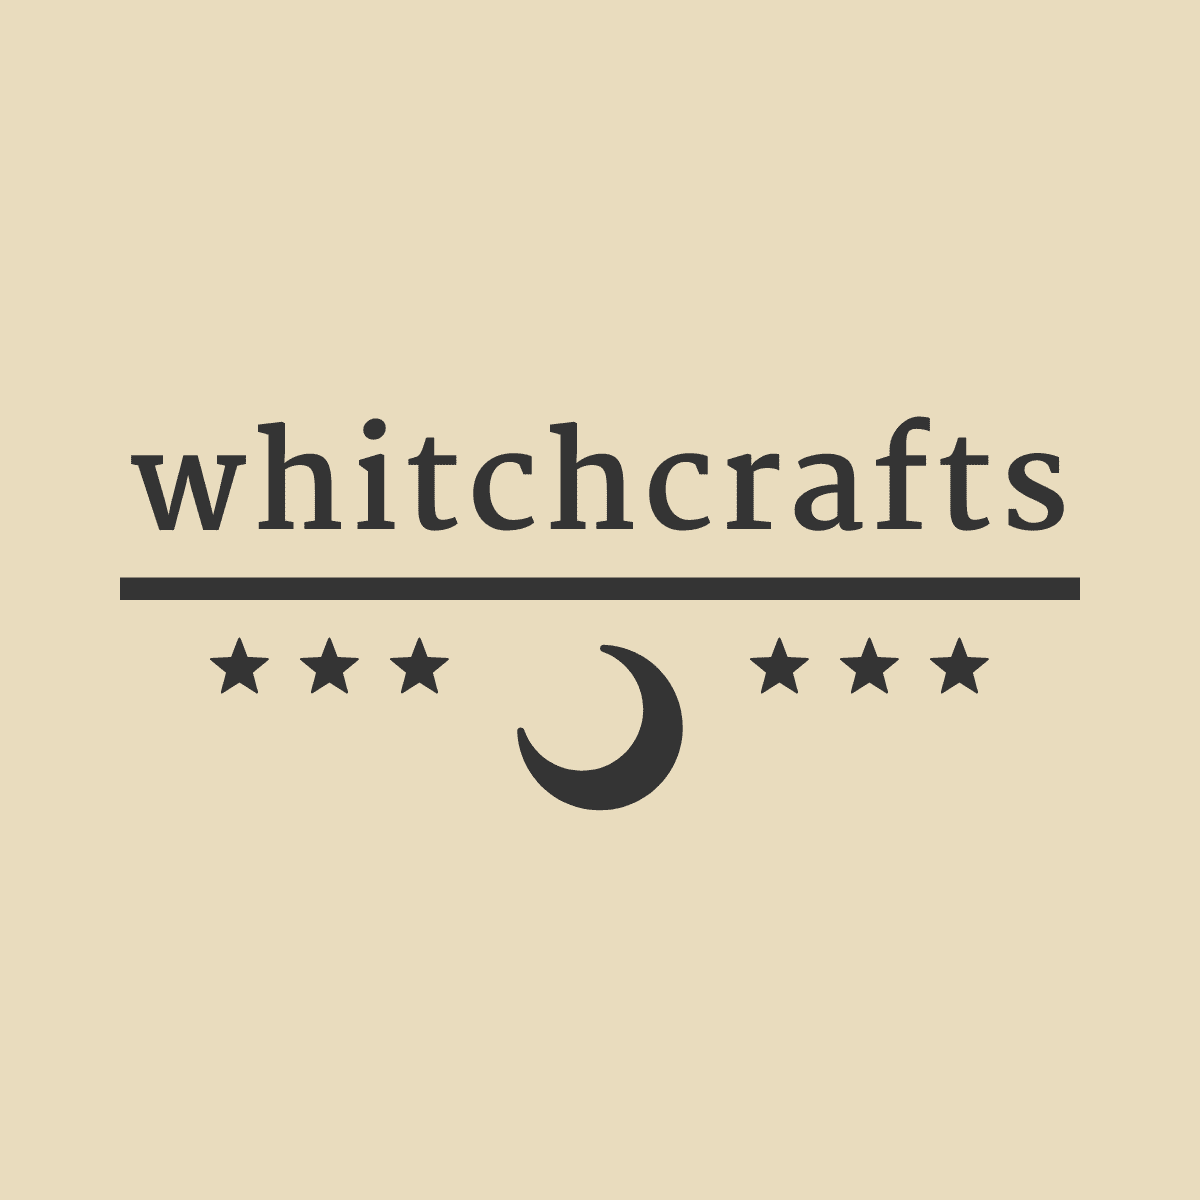 whitchcrafts